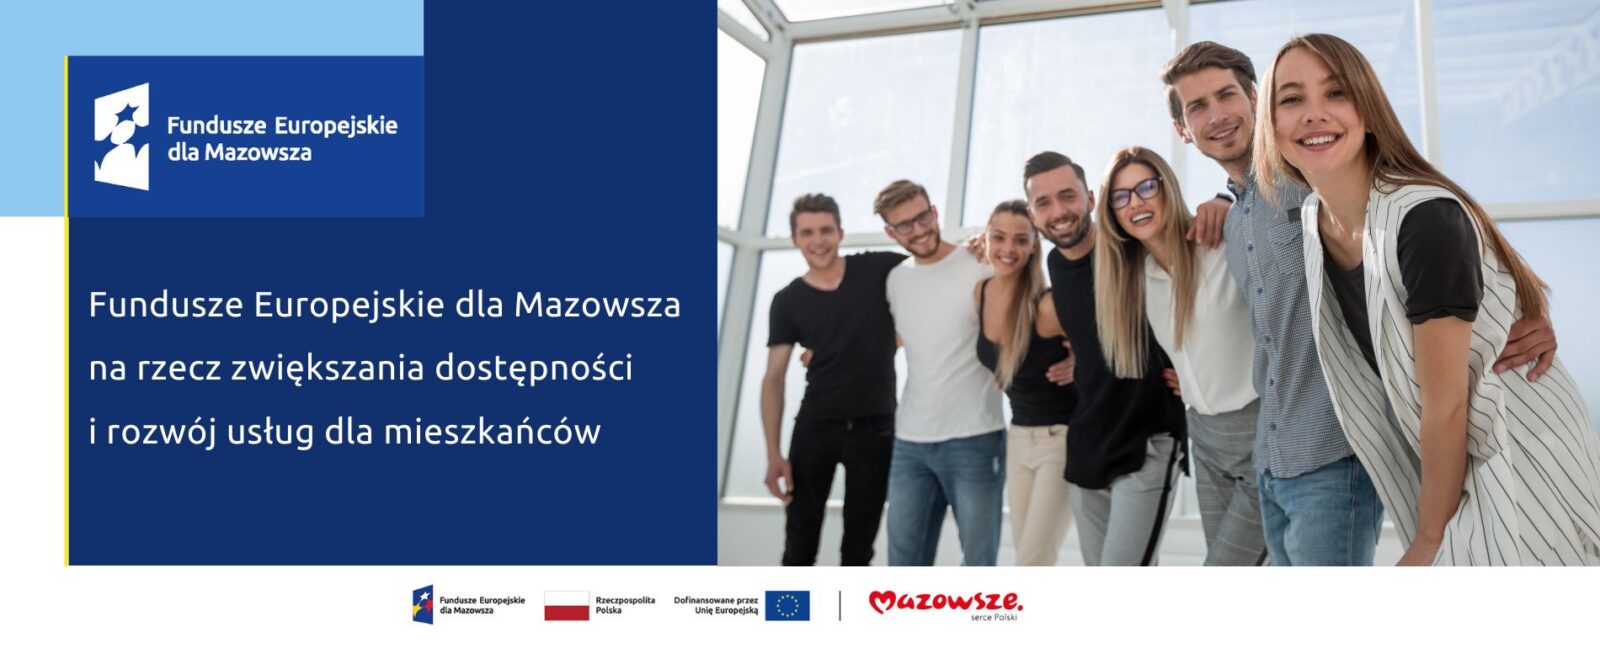 Hasło: Fundusze Europejskie dla Mazowsza na rzecz zwiększania dostępności i rozwój usług dla mieszańców, a w tle młodzi ludzie